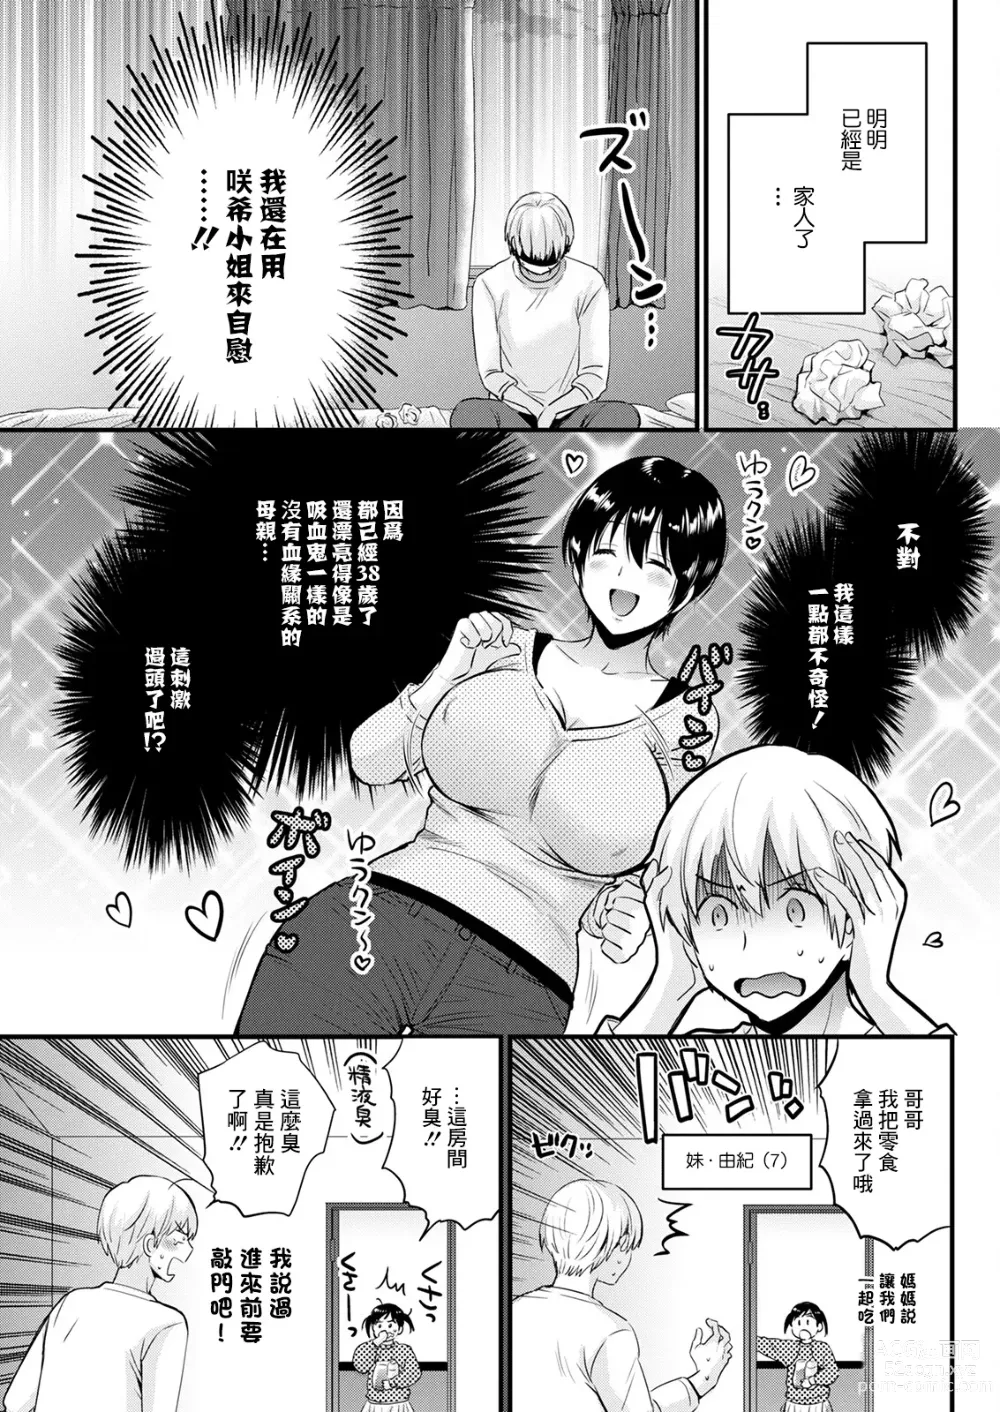 Page 3 of manga Tonari no Baba no Seiyoku ga Sugokute Komattemasu!